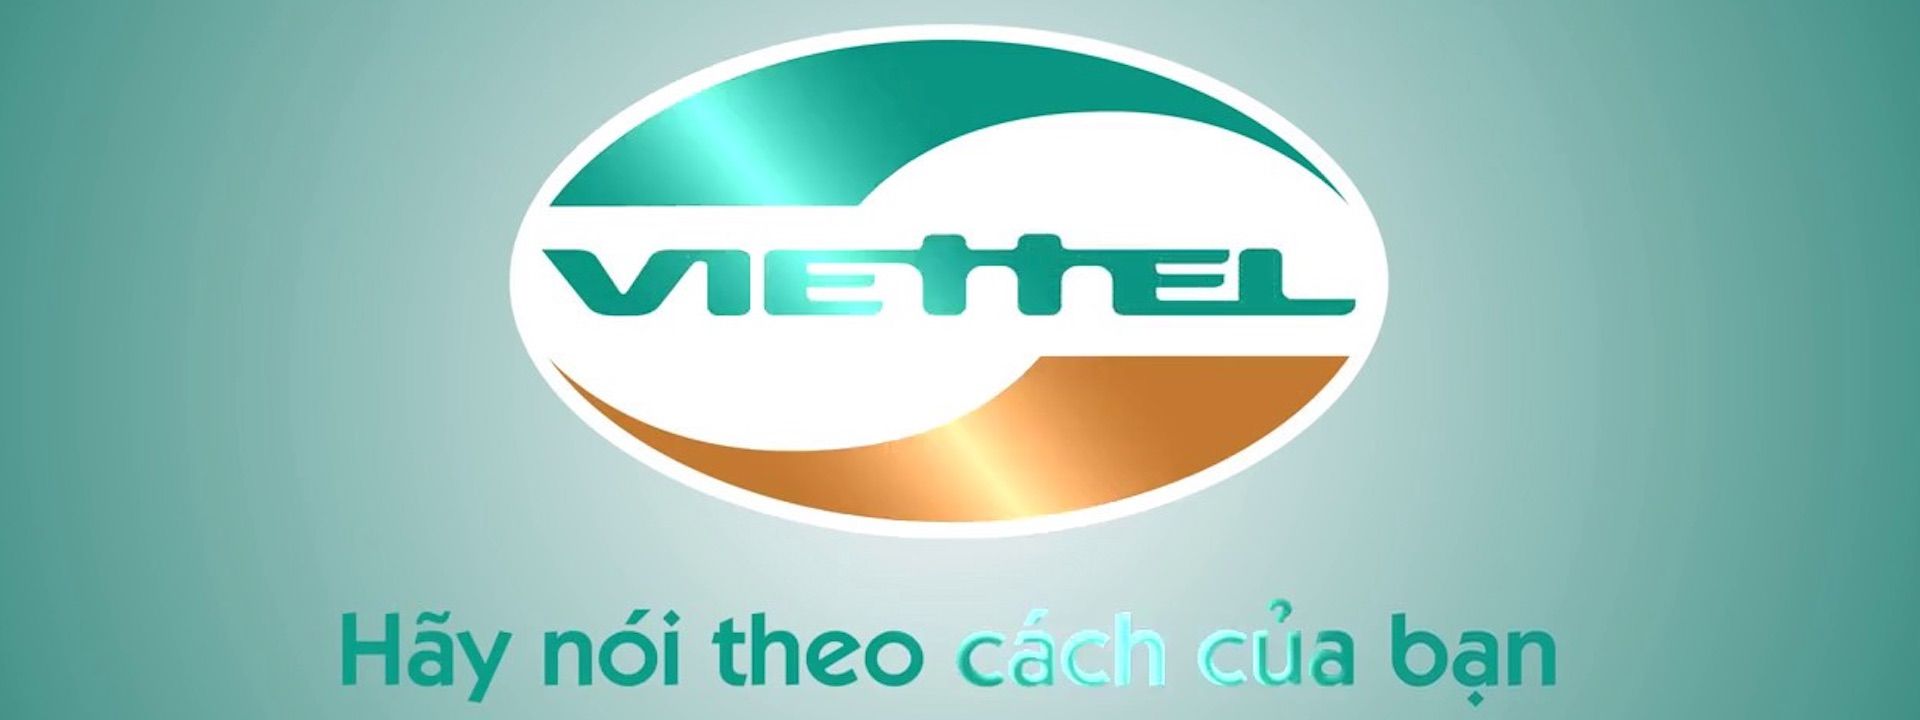 Tập đoàn Viettel tham gia vào Blockchain, mục tiêu dẫn đầu ngành công nghiệp Blockchain Việt Nam